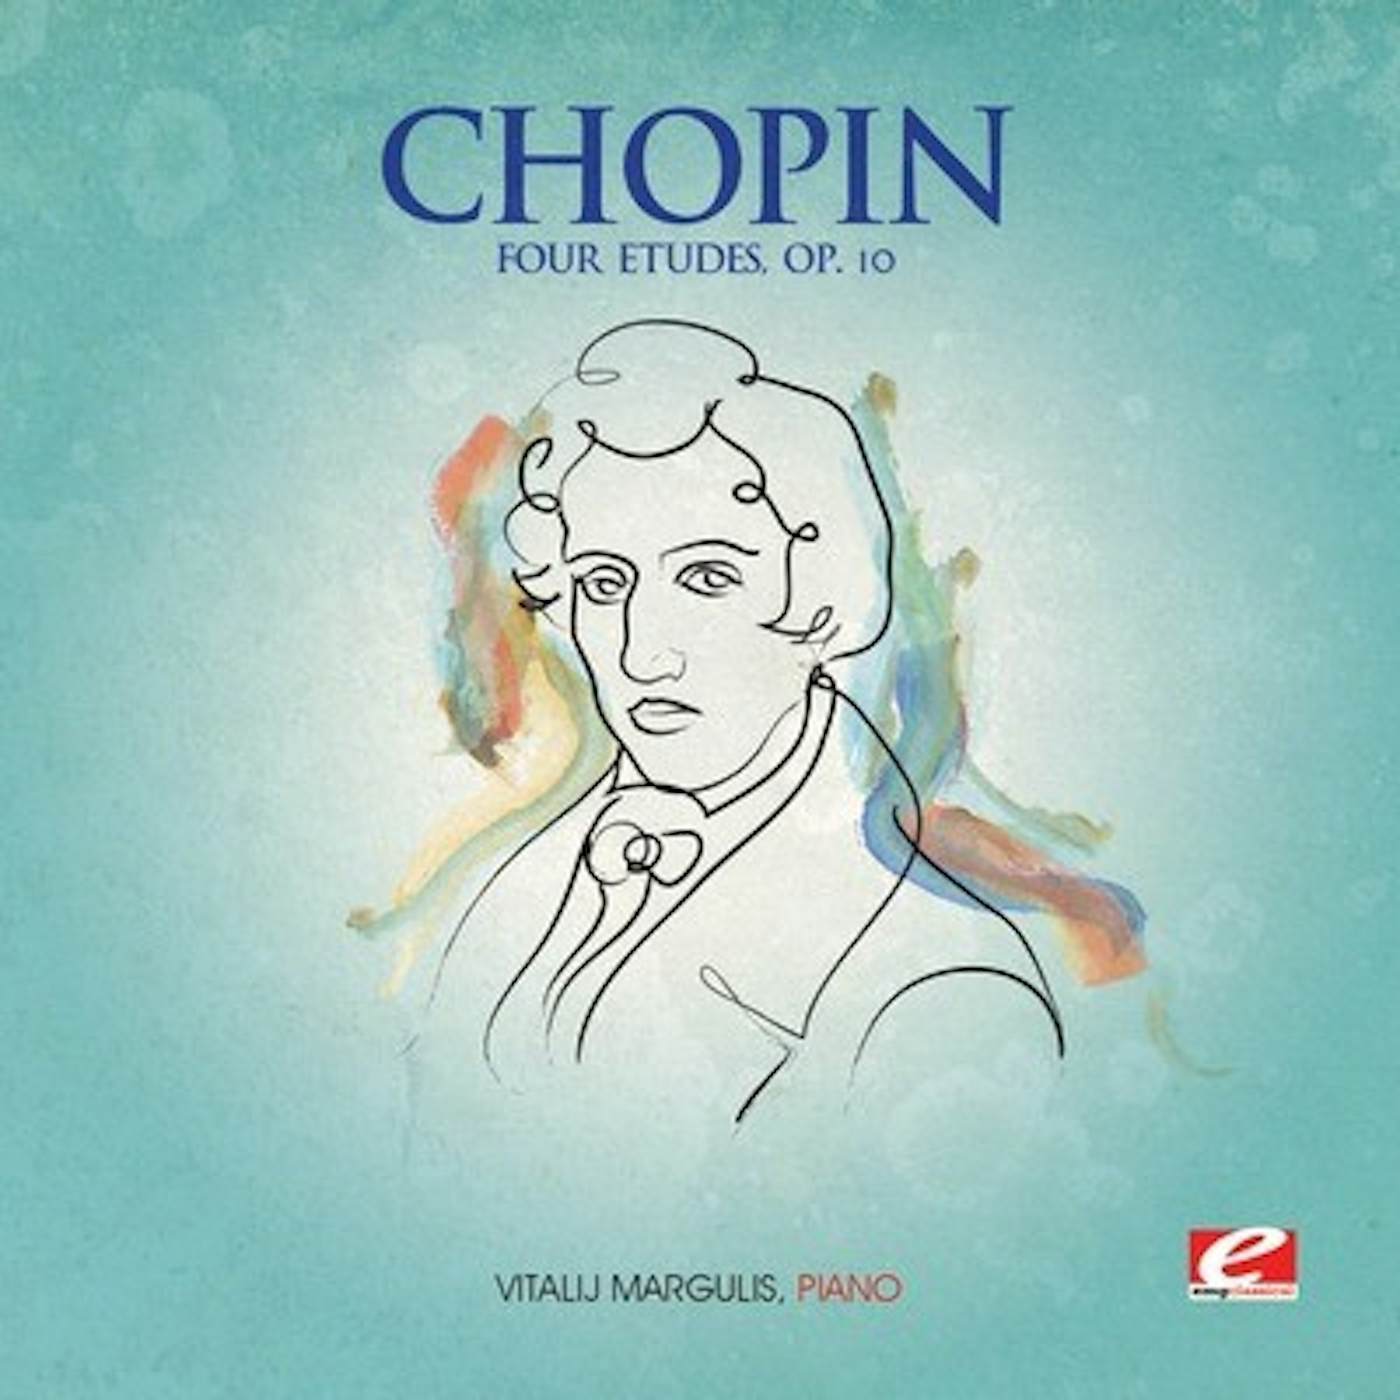 Frédéric Chopin FOUR ETUDES CD